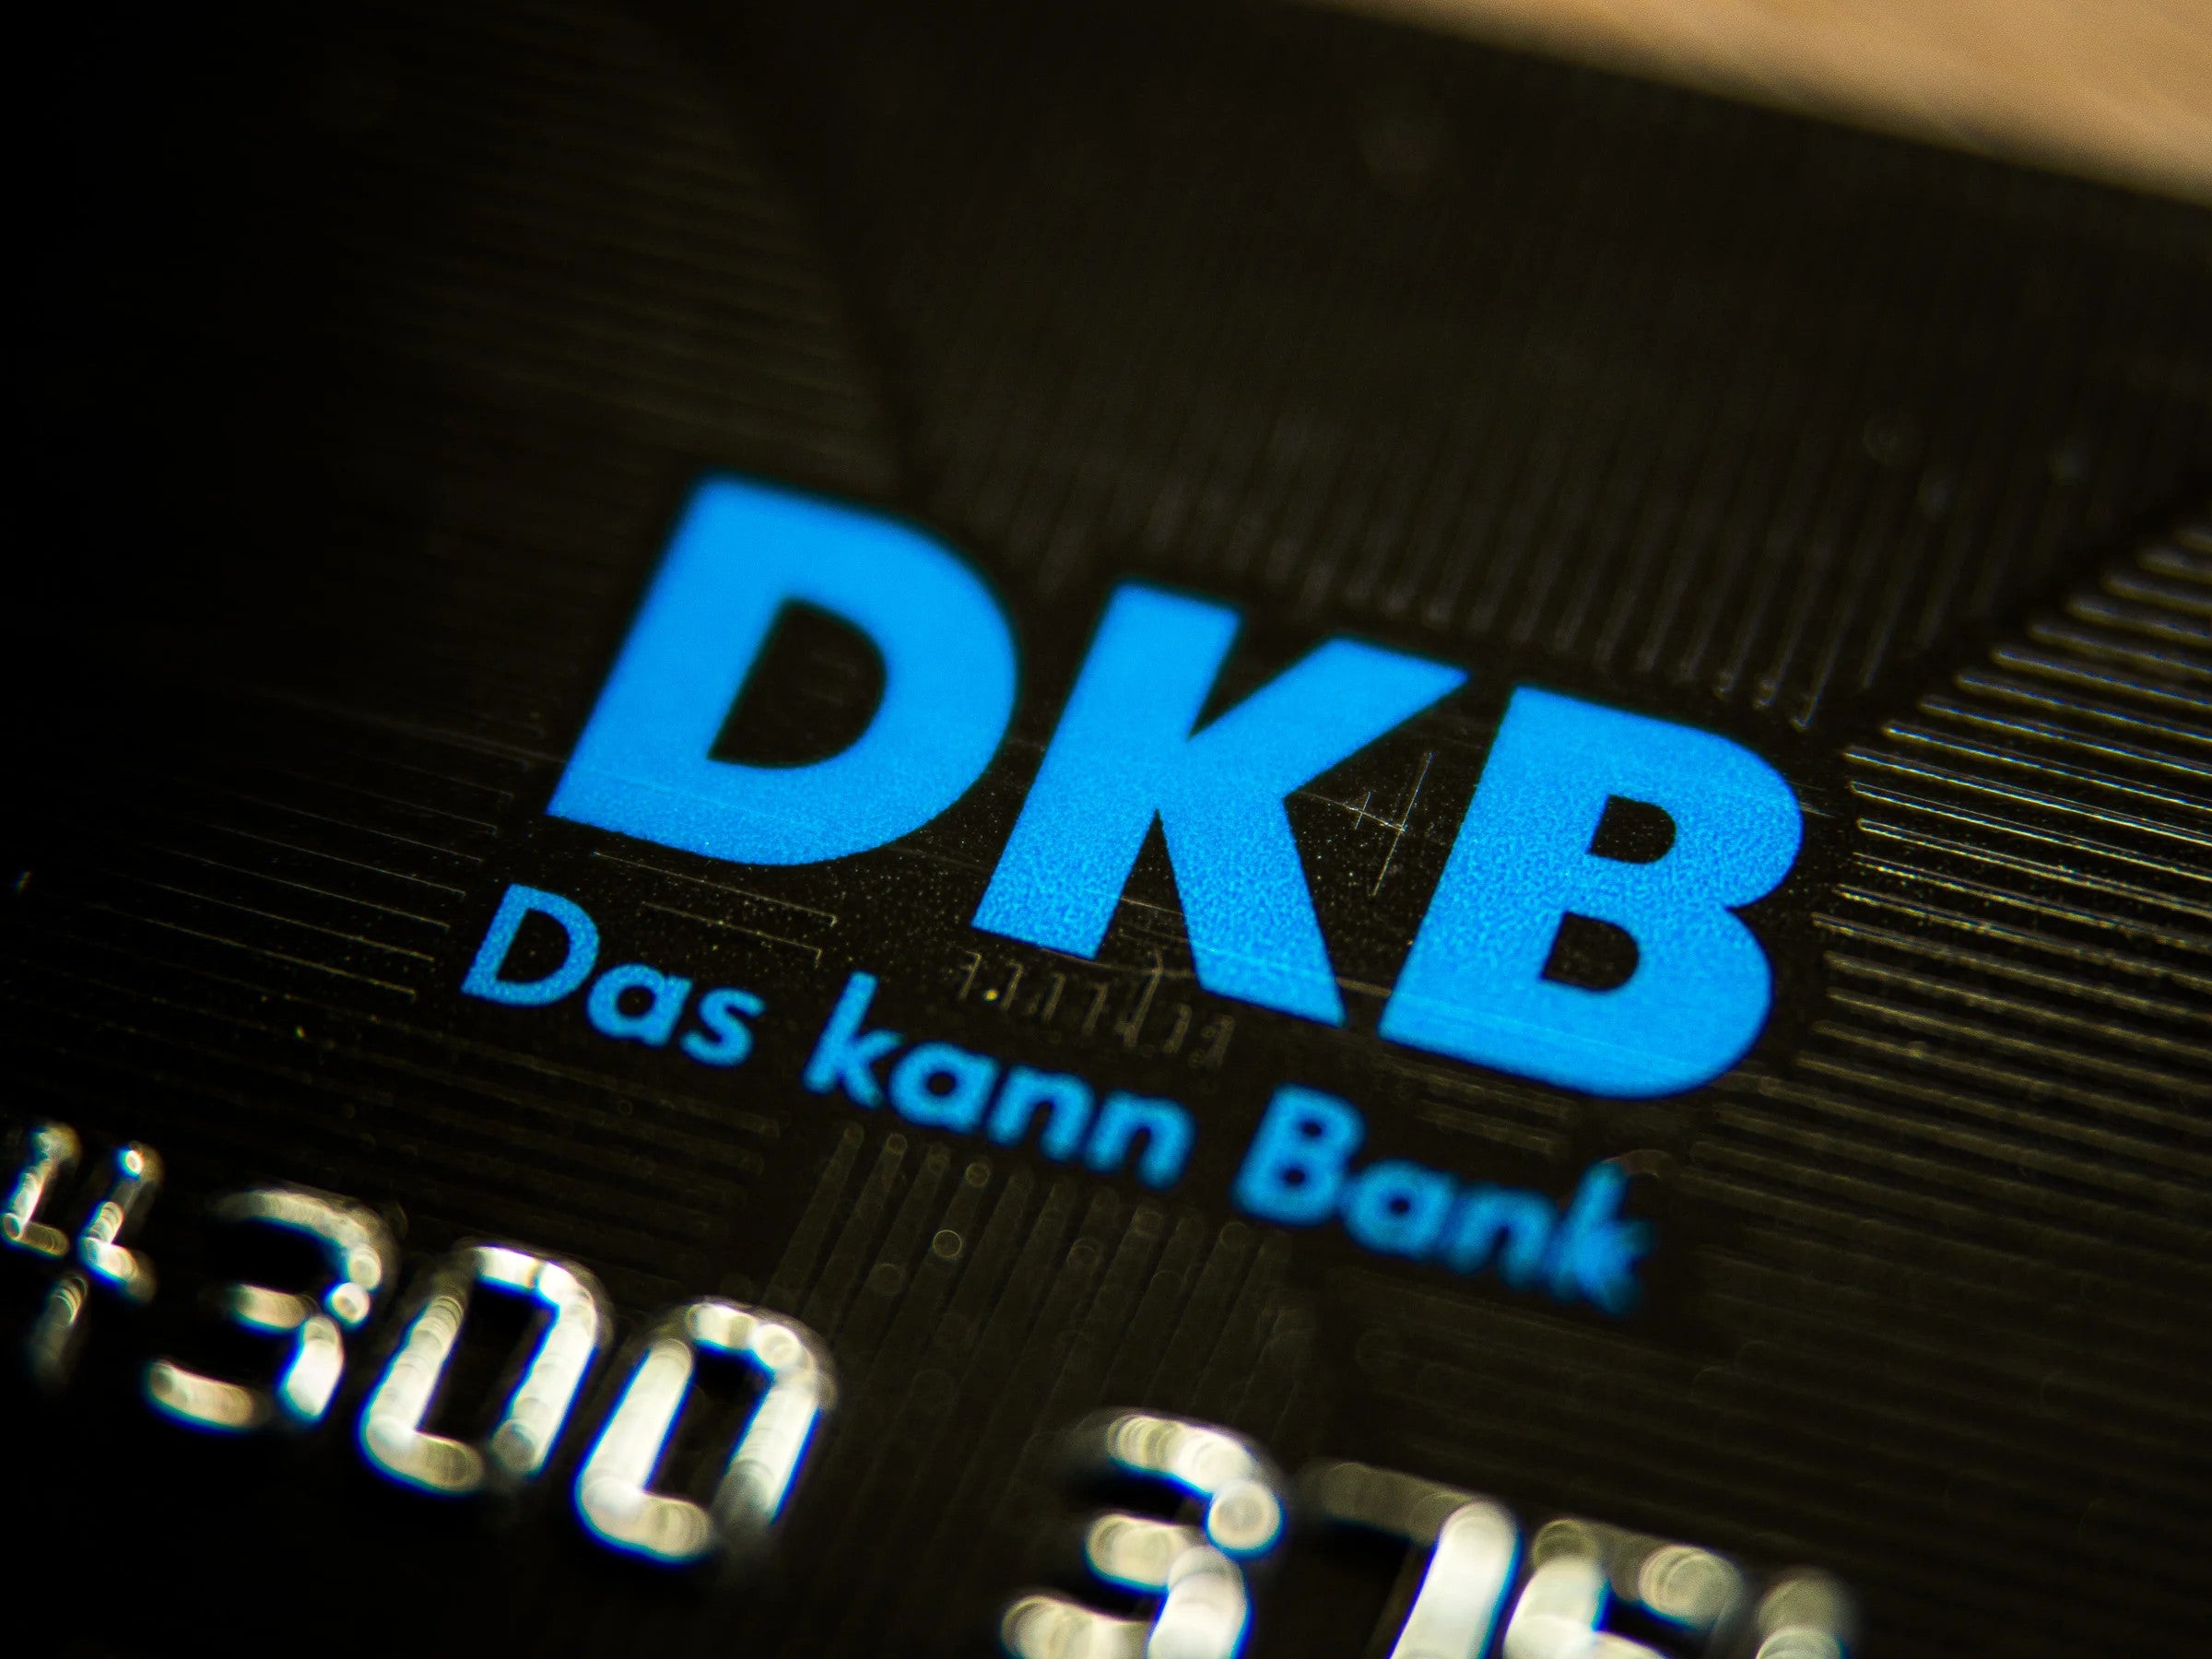 #DKB schaltet Online-Banking ab: So geht es jetzt weiter